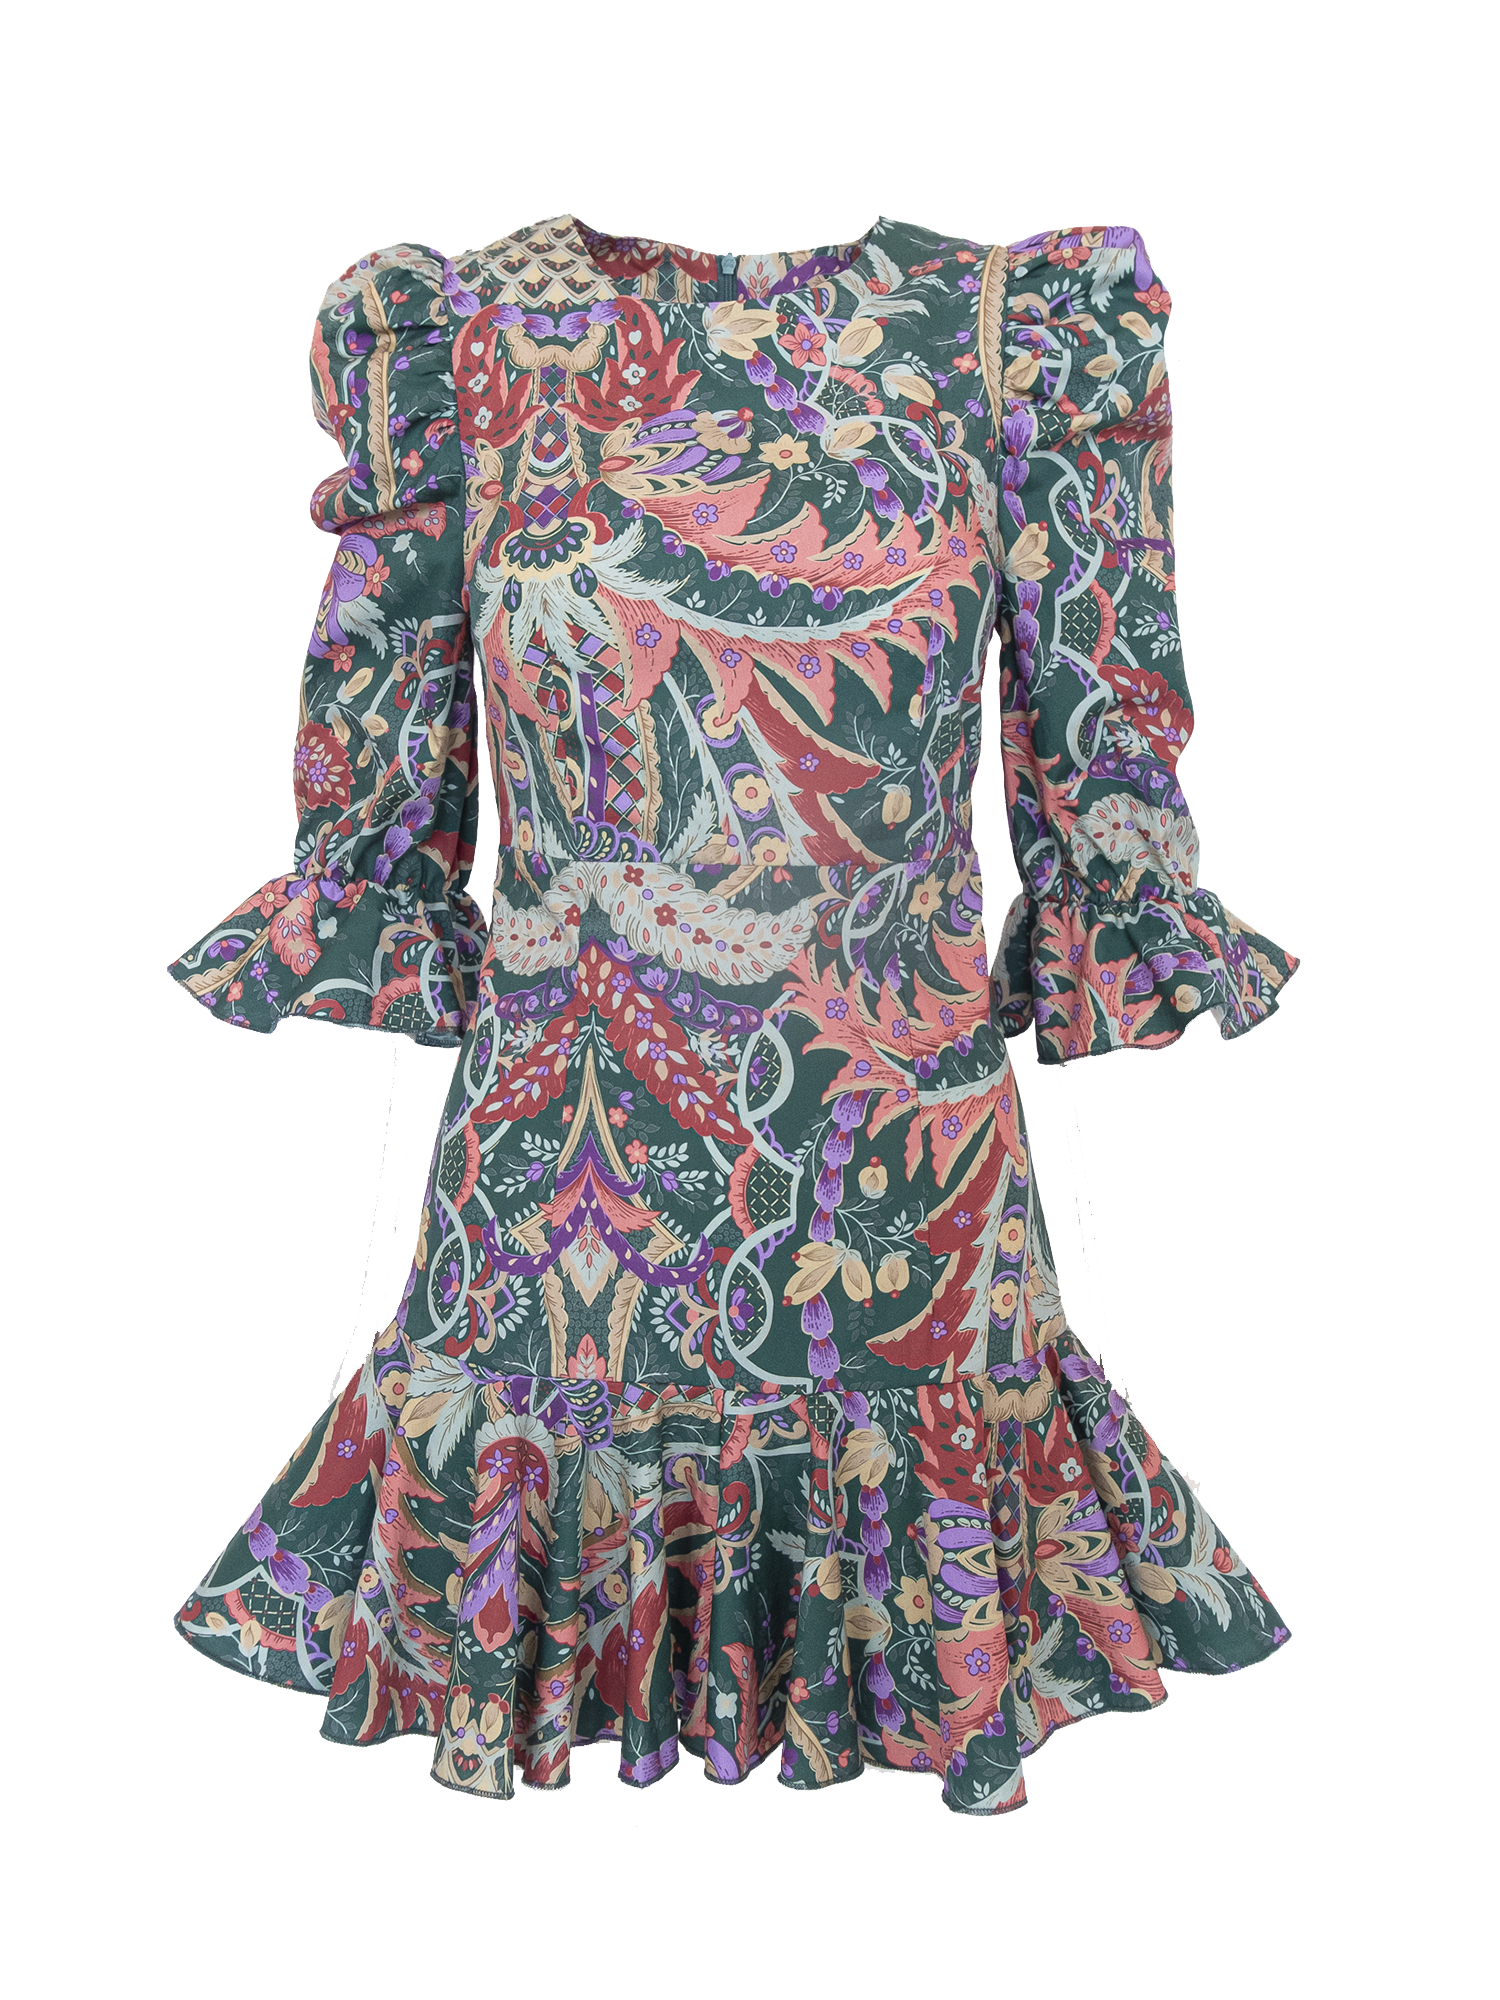 ANDREA - short Pergola print cotton dress